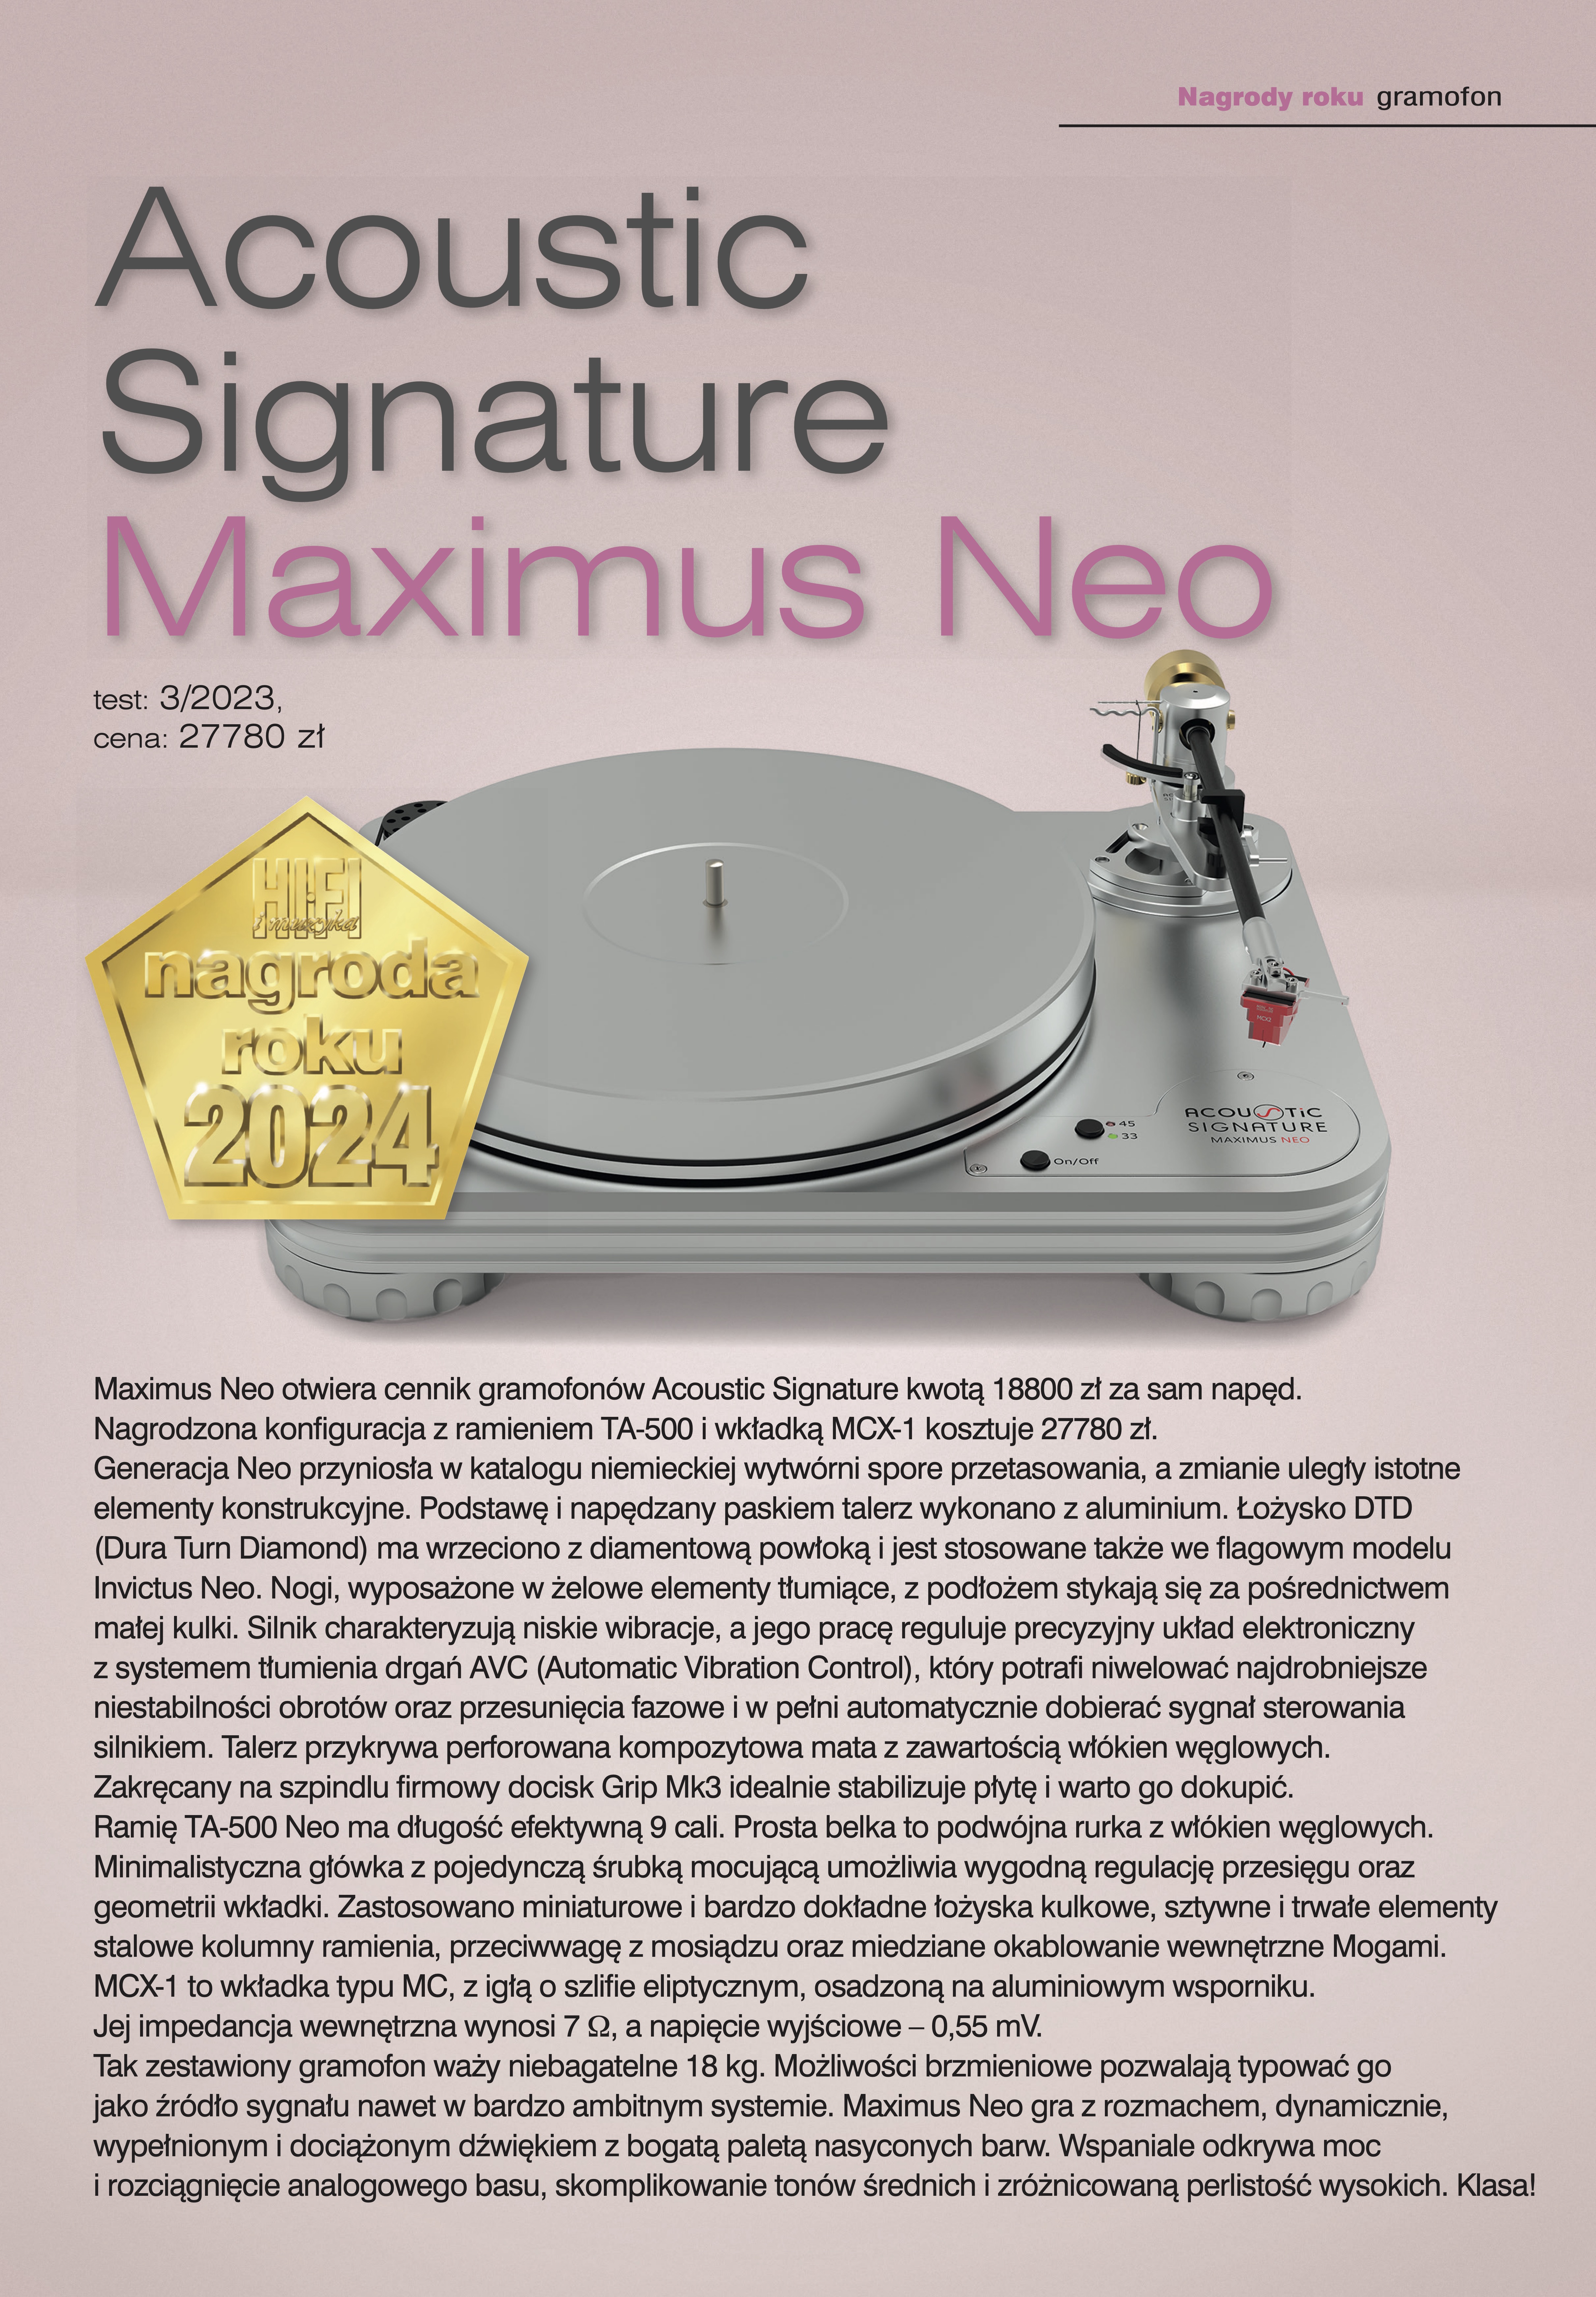 Acoustic Signature Maximus Neo.jpg